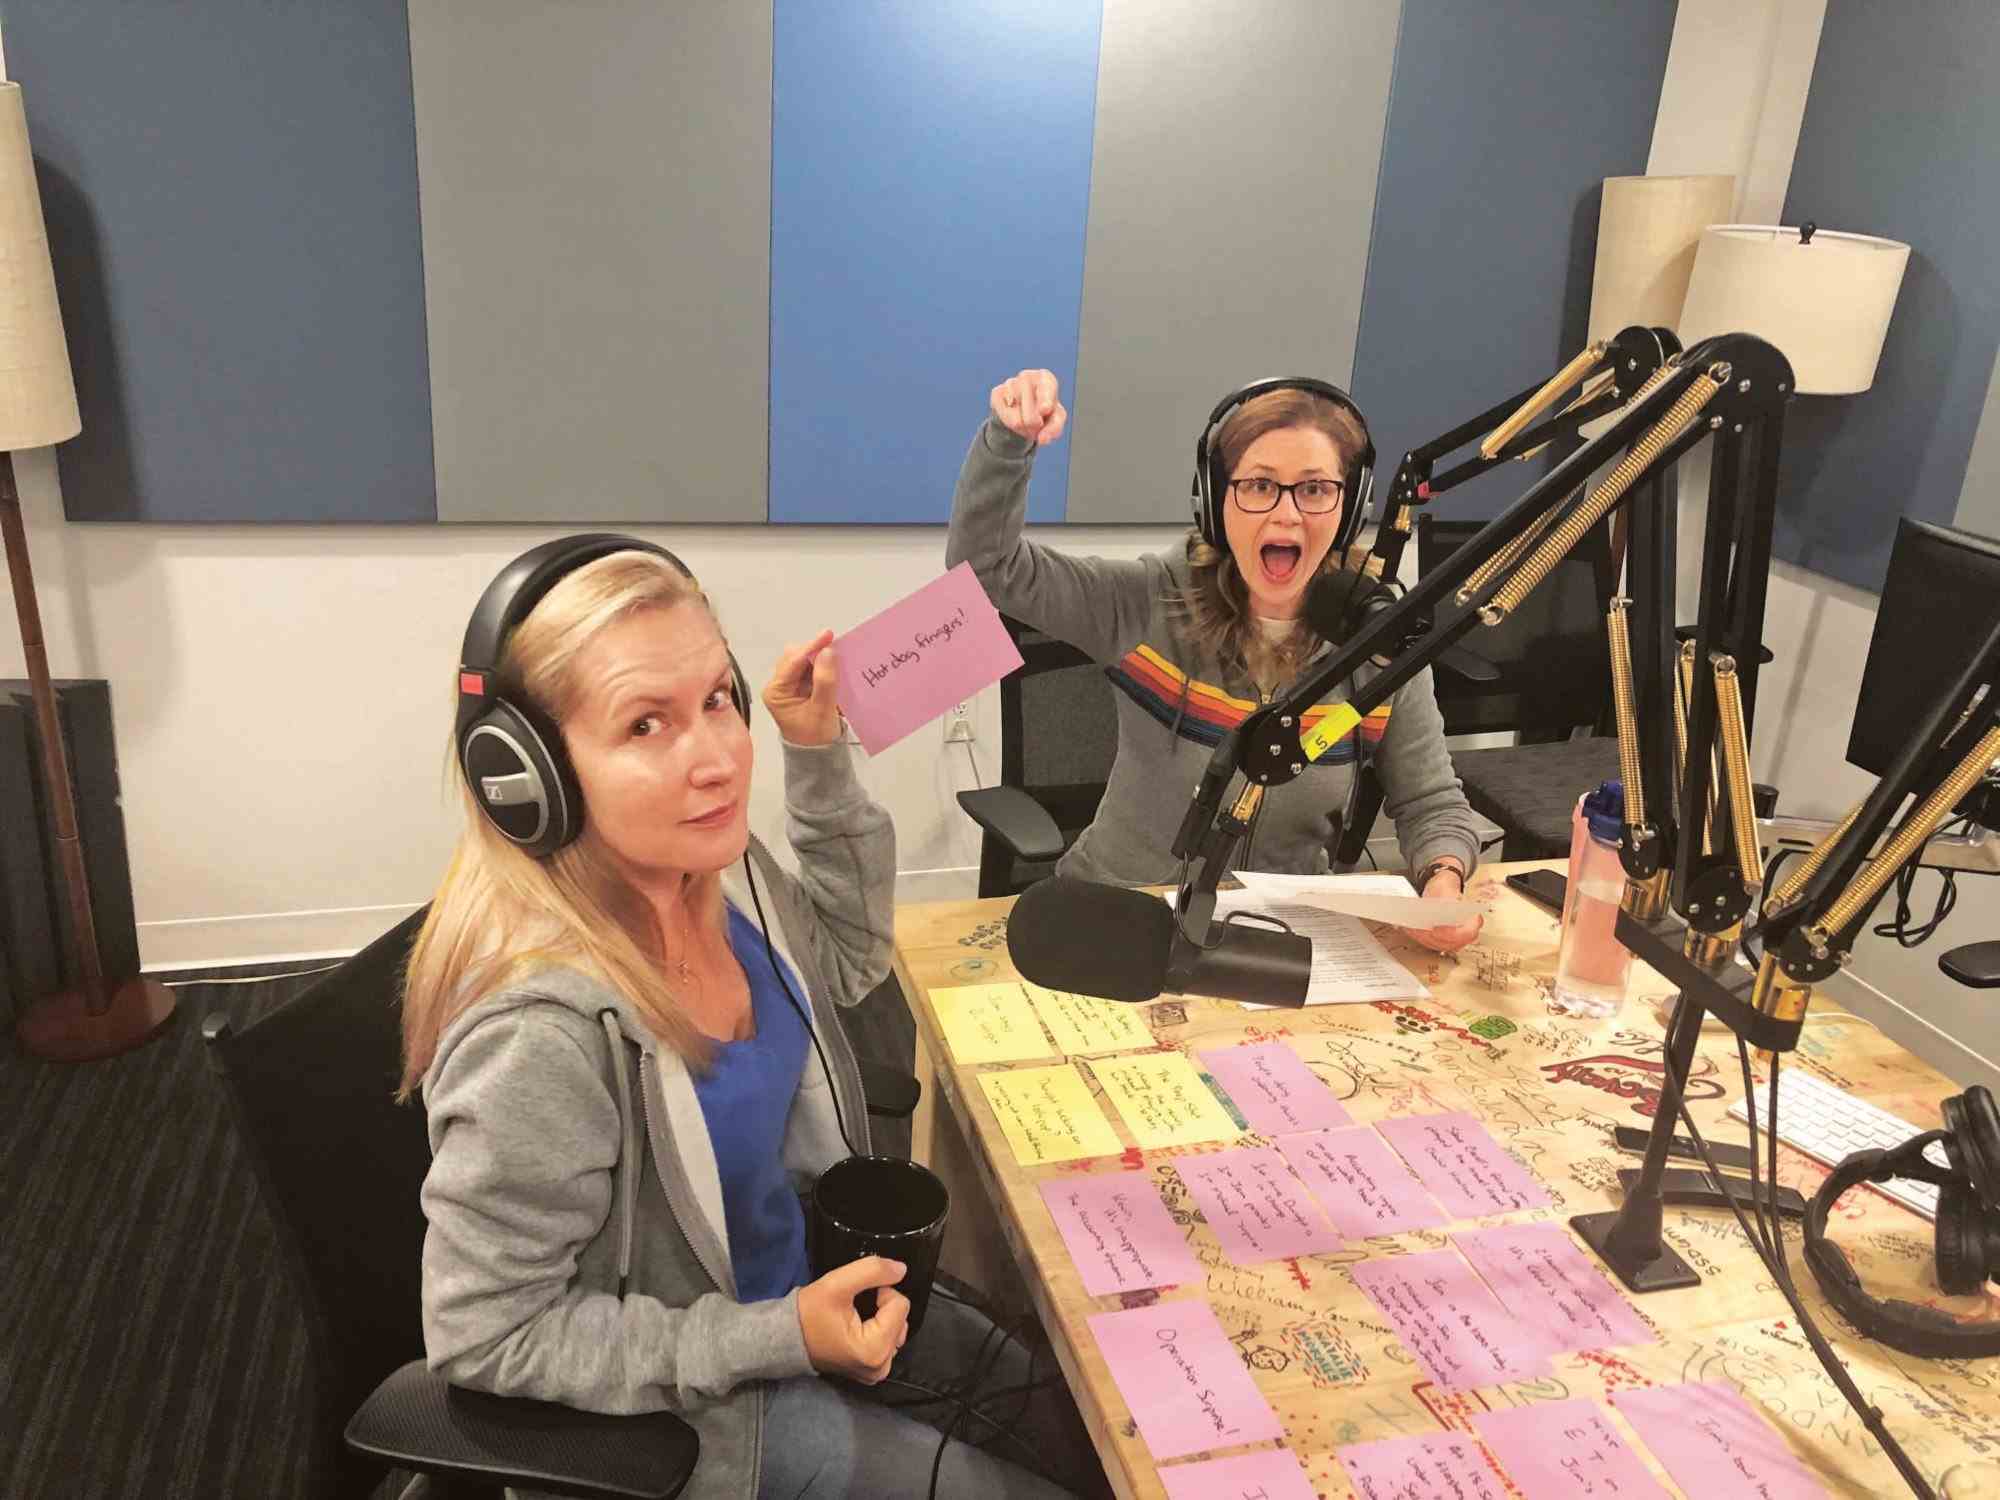 Deux femmes (Jenna Fischer et Angela Kinsey) sont assises devant des micros dans un studio d'enregistrement.